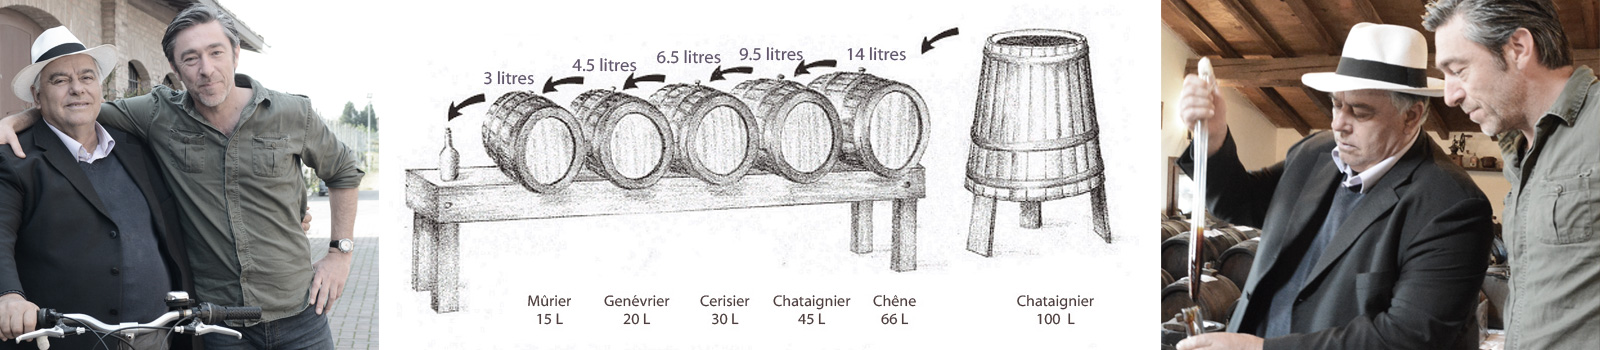 Les secrets du vinaigre balsamique